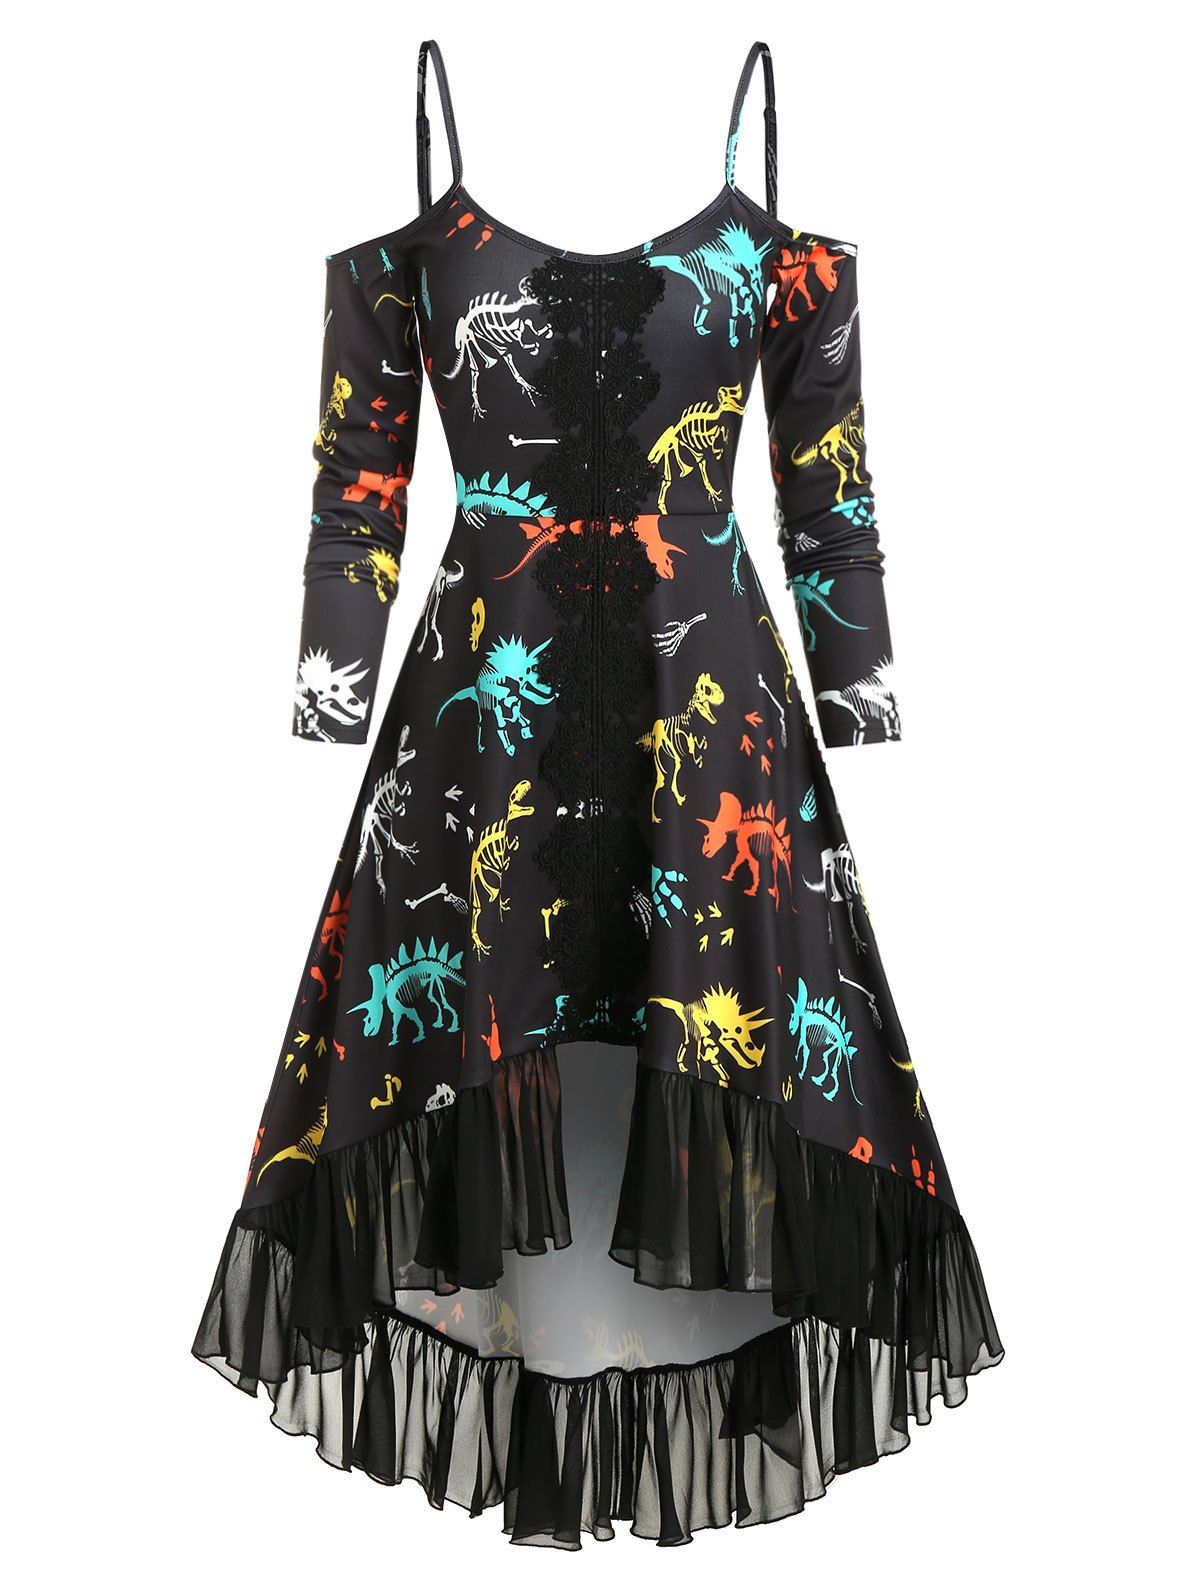 Vintage Gothic Dinosaur Dress Print Cutout Cold Shoulder High Low Chiffon Flounce Guipure Lace Insert Dress - BLACK L